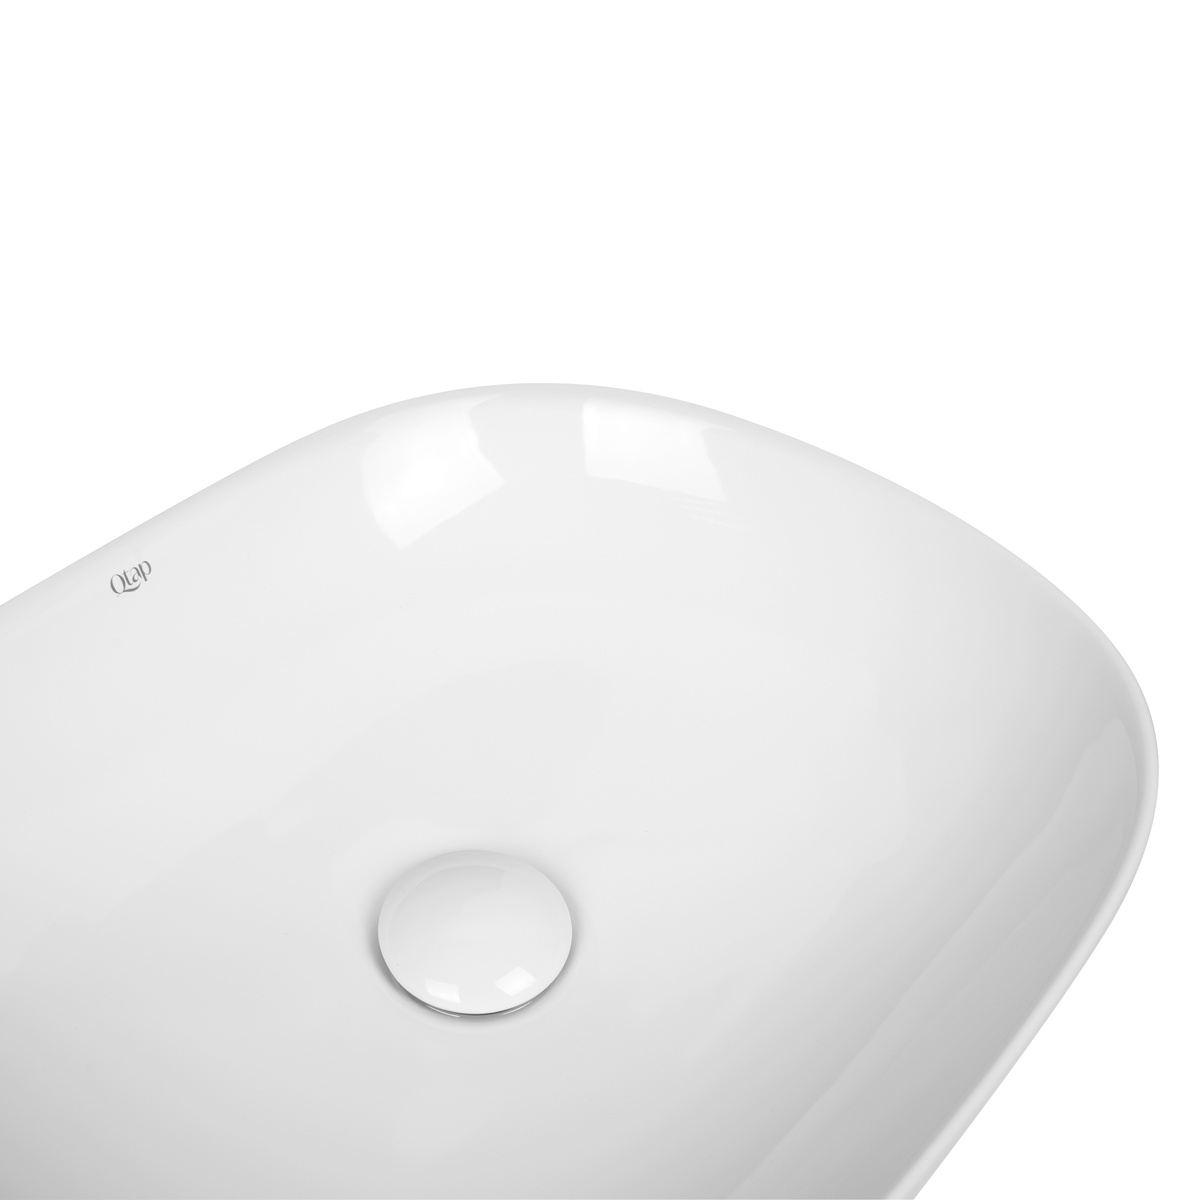 Умывальник накладной на столешницу в ванную 465мм x 375мм Q-TAP Aquarius белый прямоугольная QT21112185W